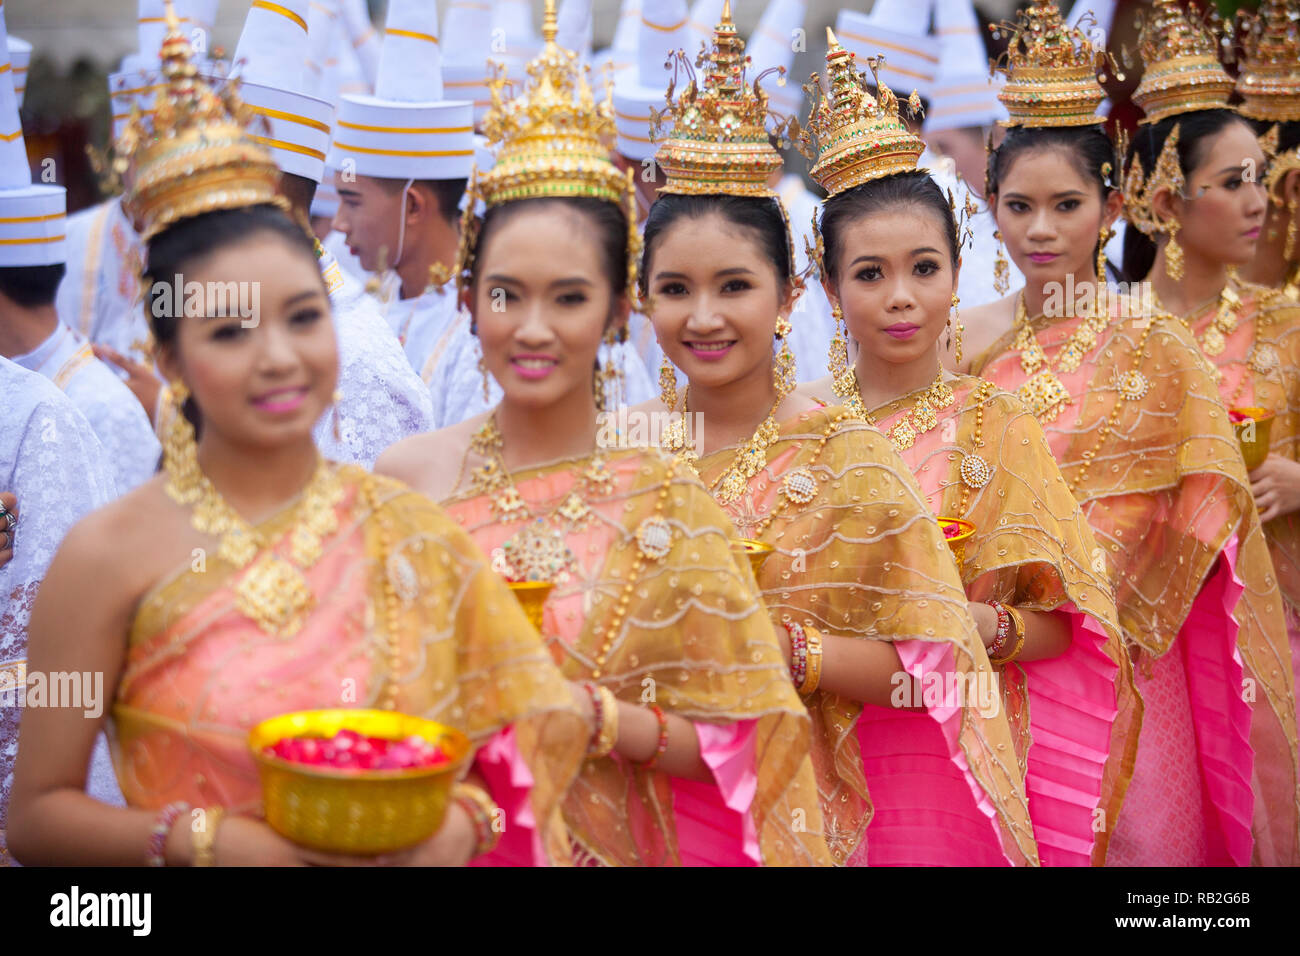 Cérémonie religieuse bouddhiste thaï Wat Traimit, le Temple du Bouddha d'or, Bangkok, Thaïlande Banque D'Images